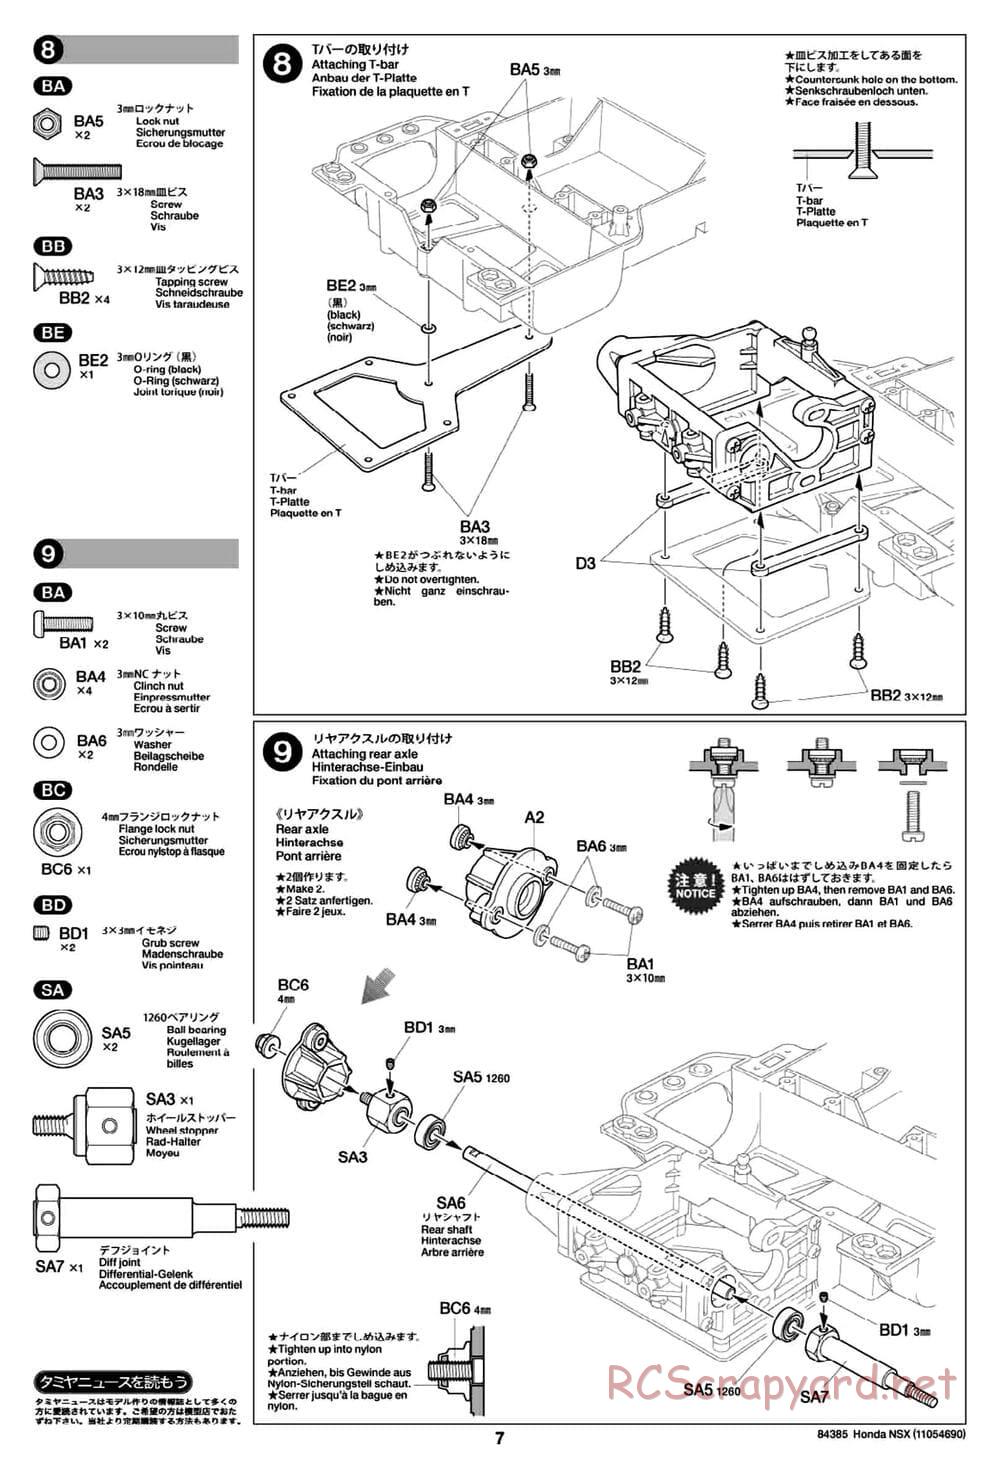 Tamiya - Honda NSX - Group-C Chassis - Manual - Page 7